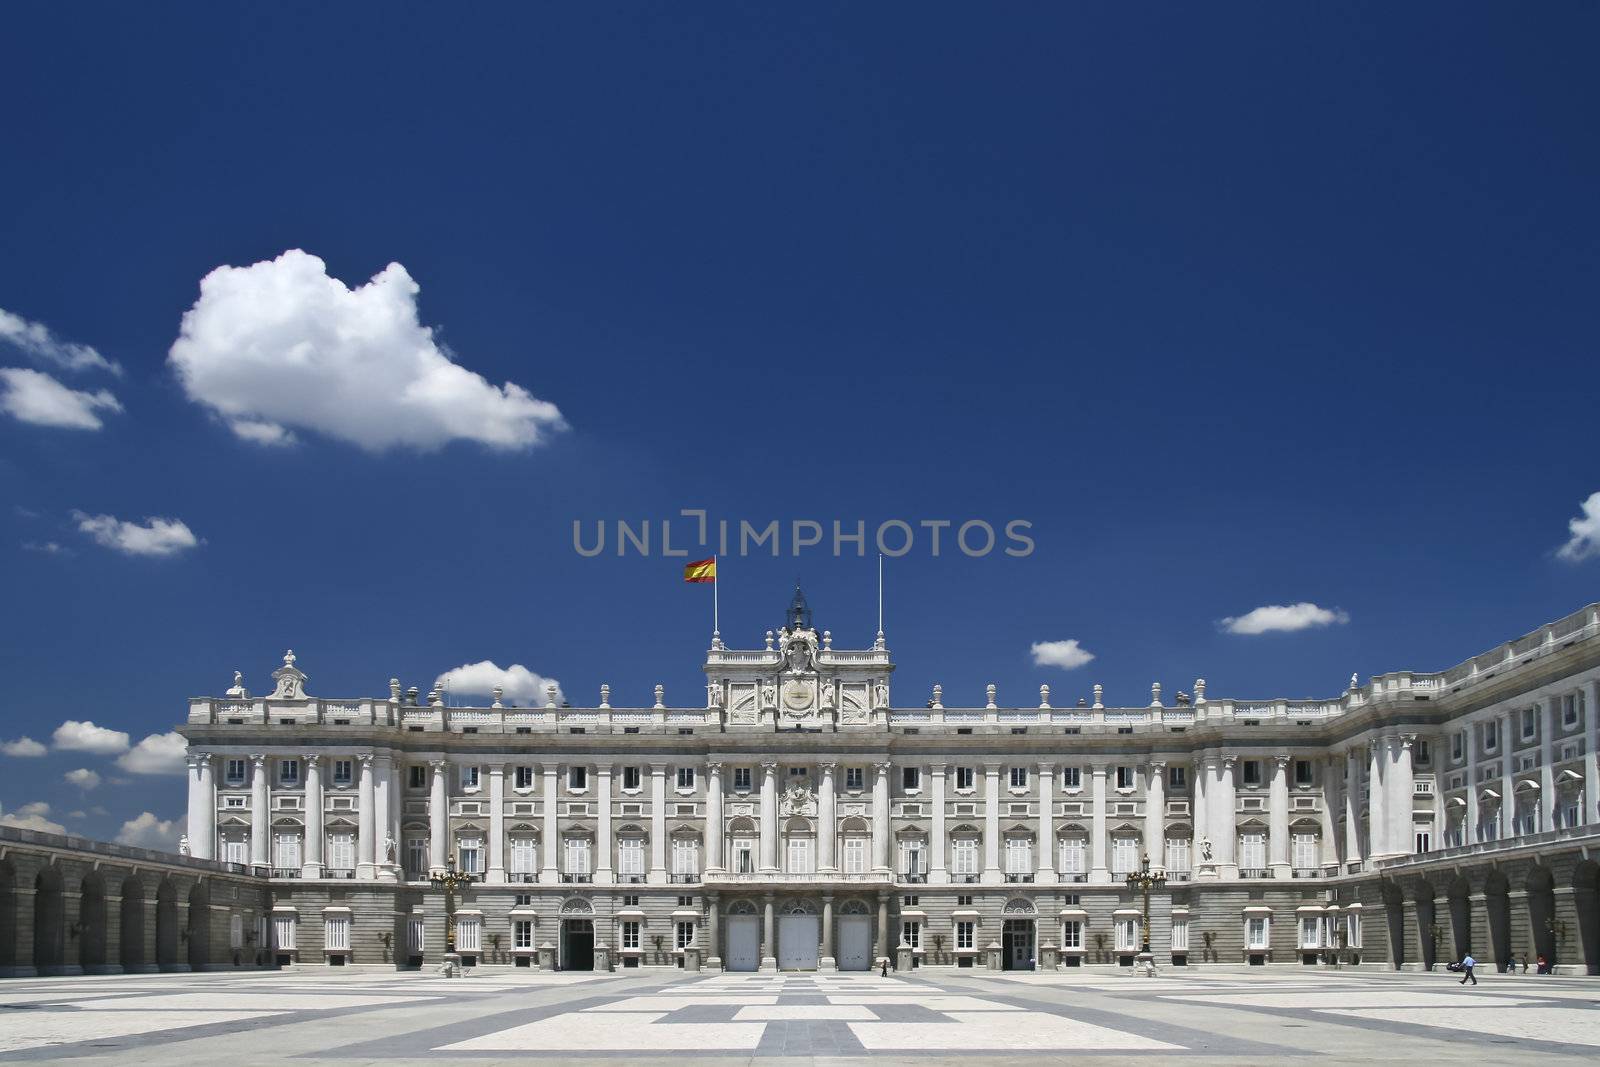 Palacio Real - Spanish Royal palace in Madrid.